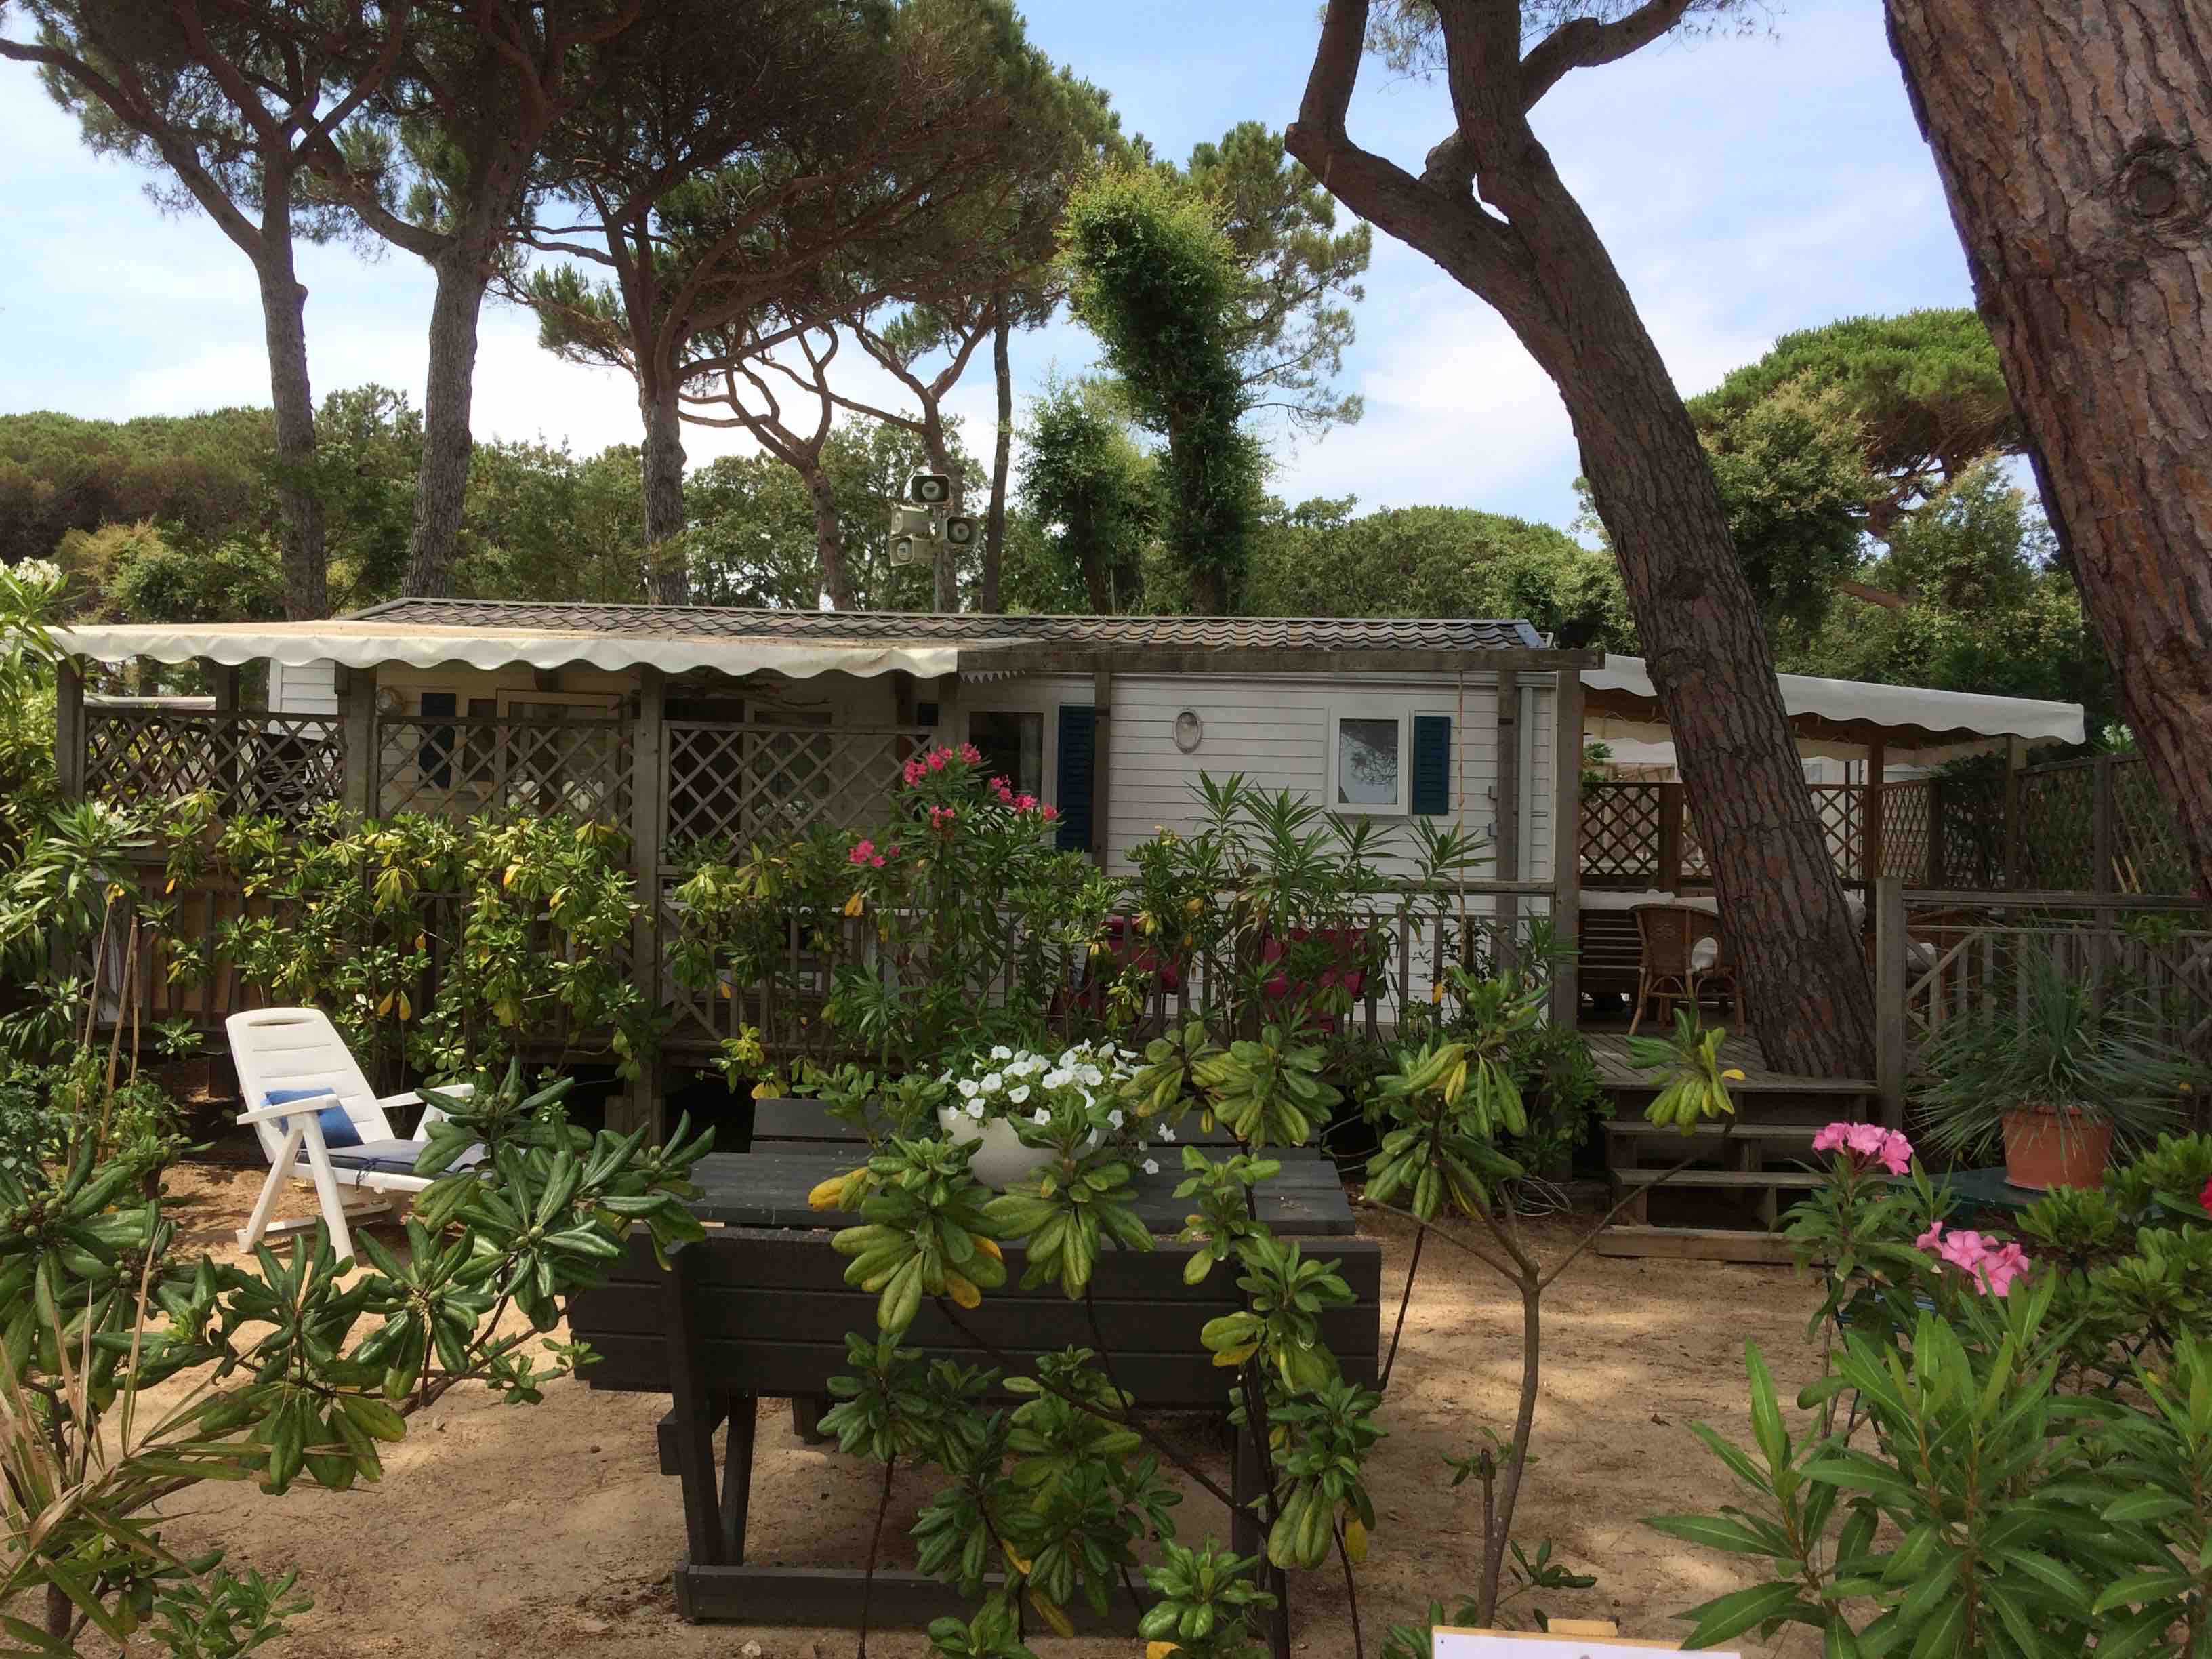 location Mobil Home particulier Toison d'Or a Ramatuelle
               Saint Tropez